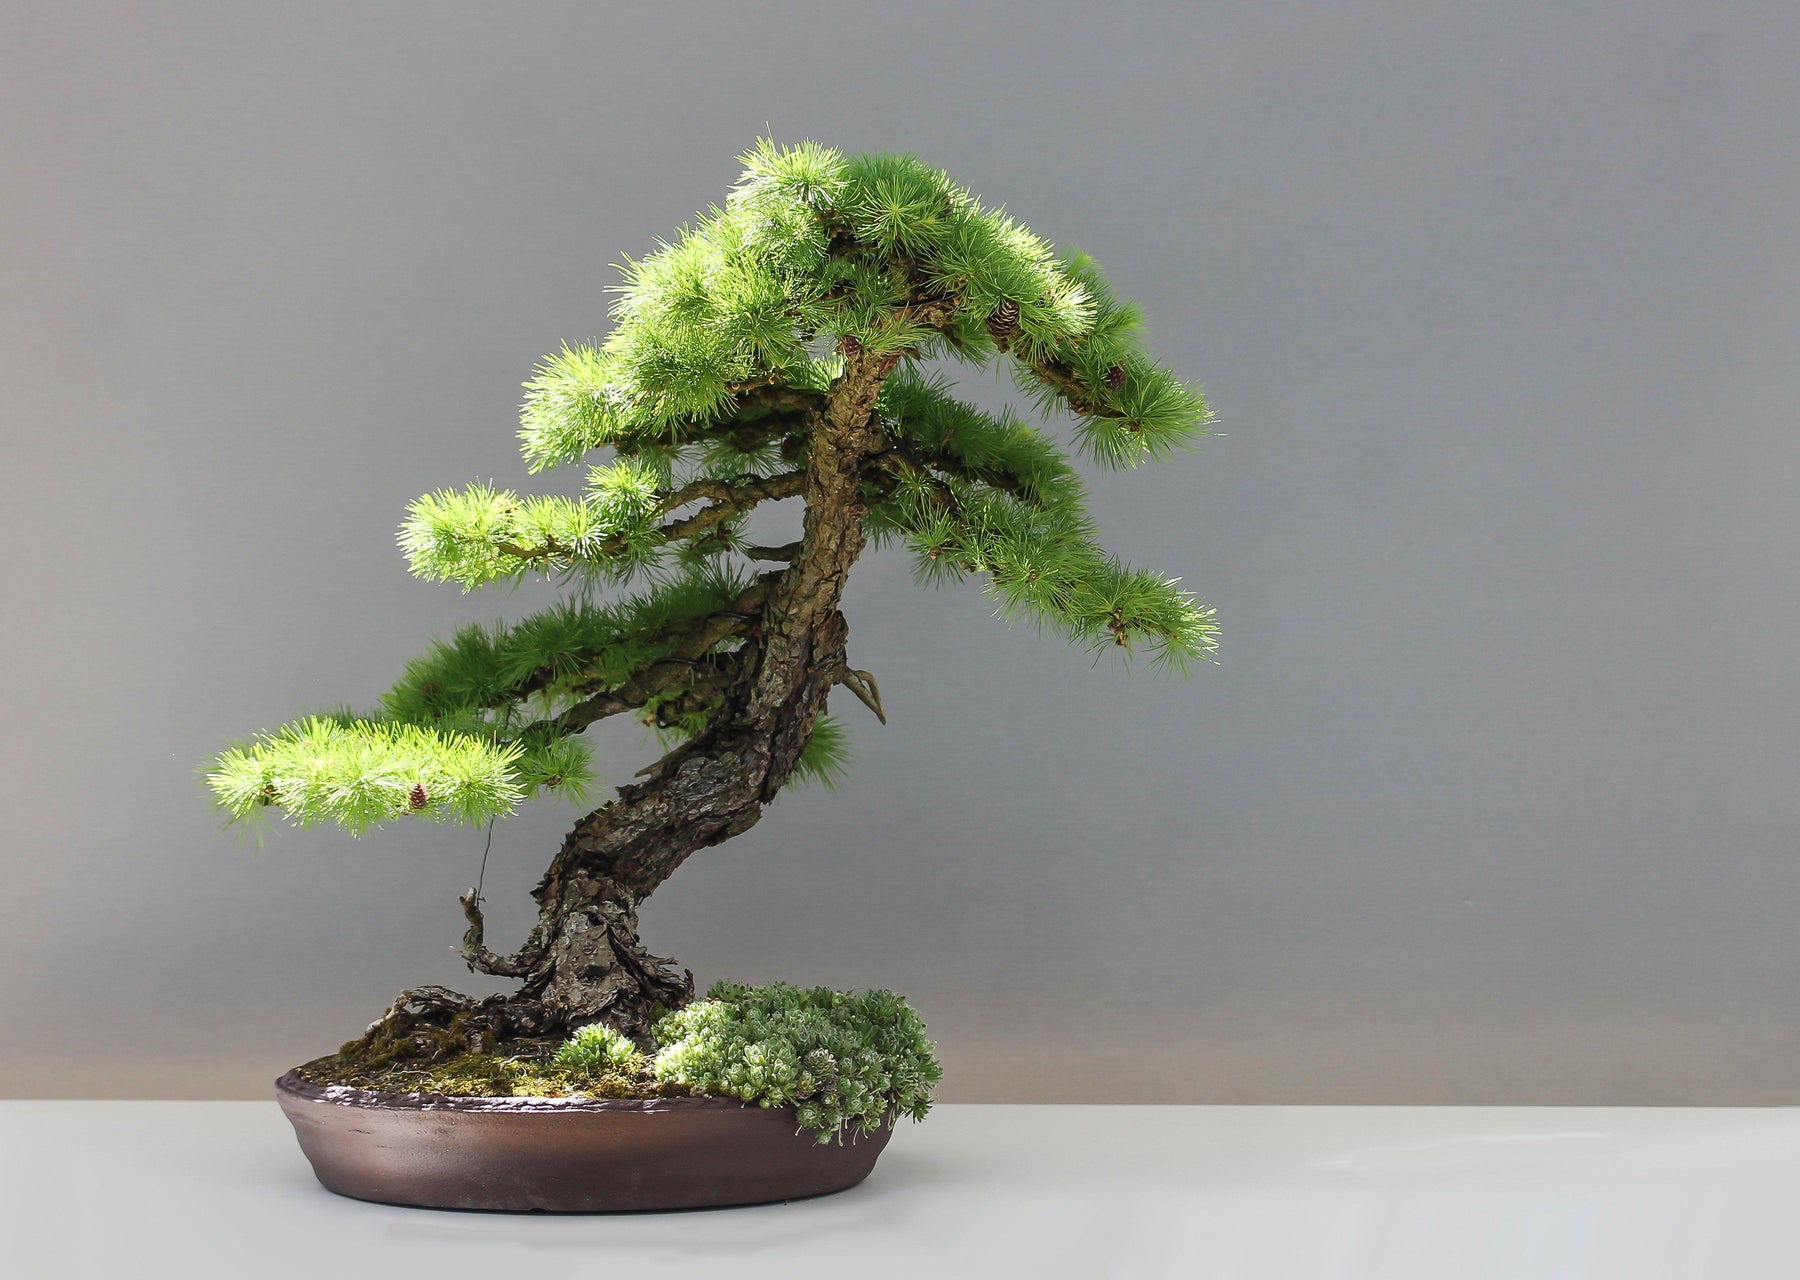 How many bonsai trees is “too many” bonsai trees?